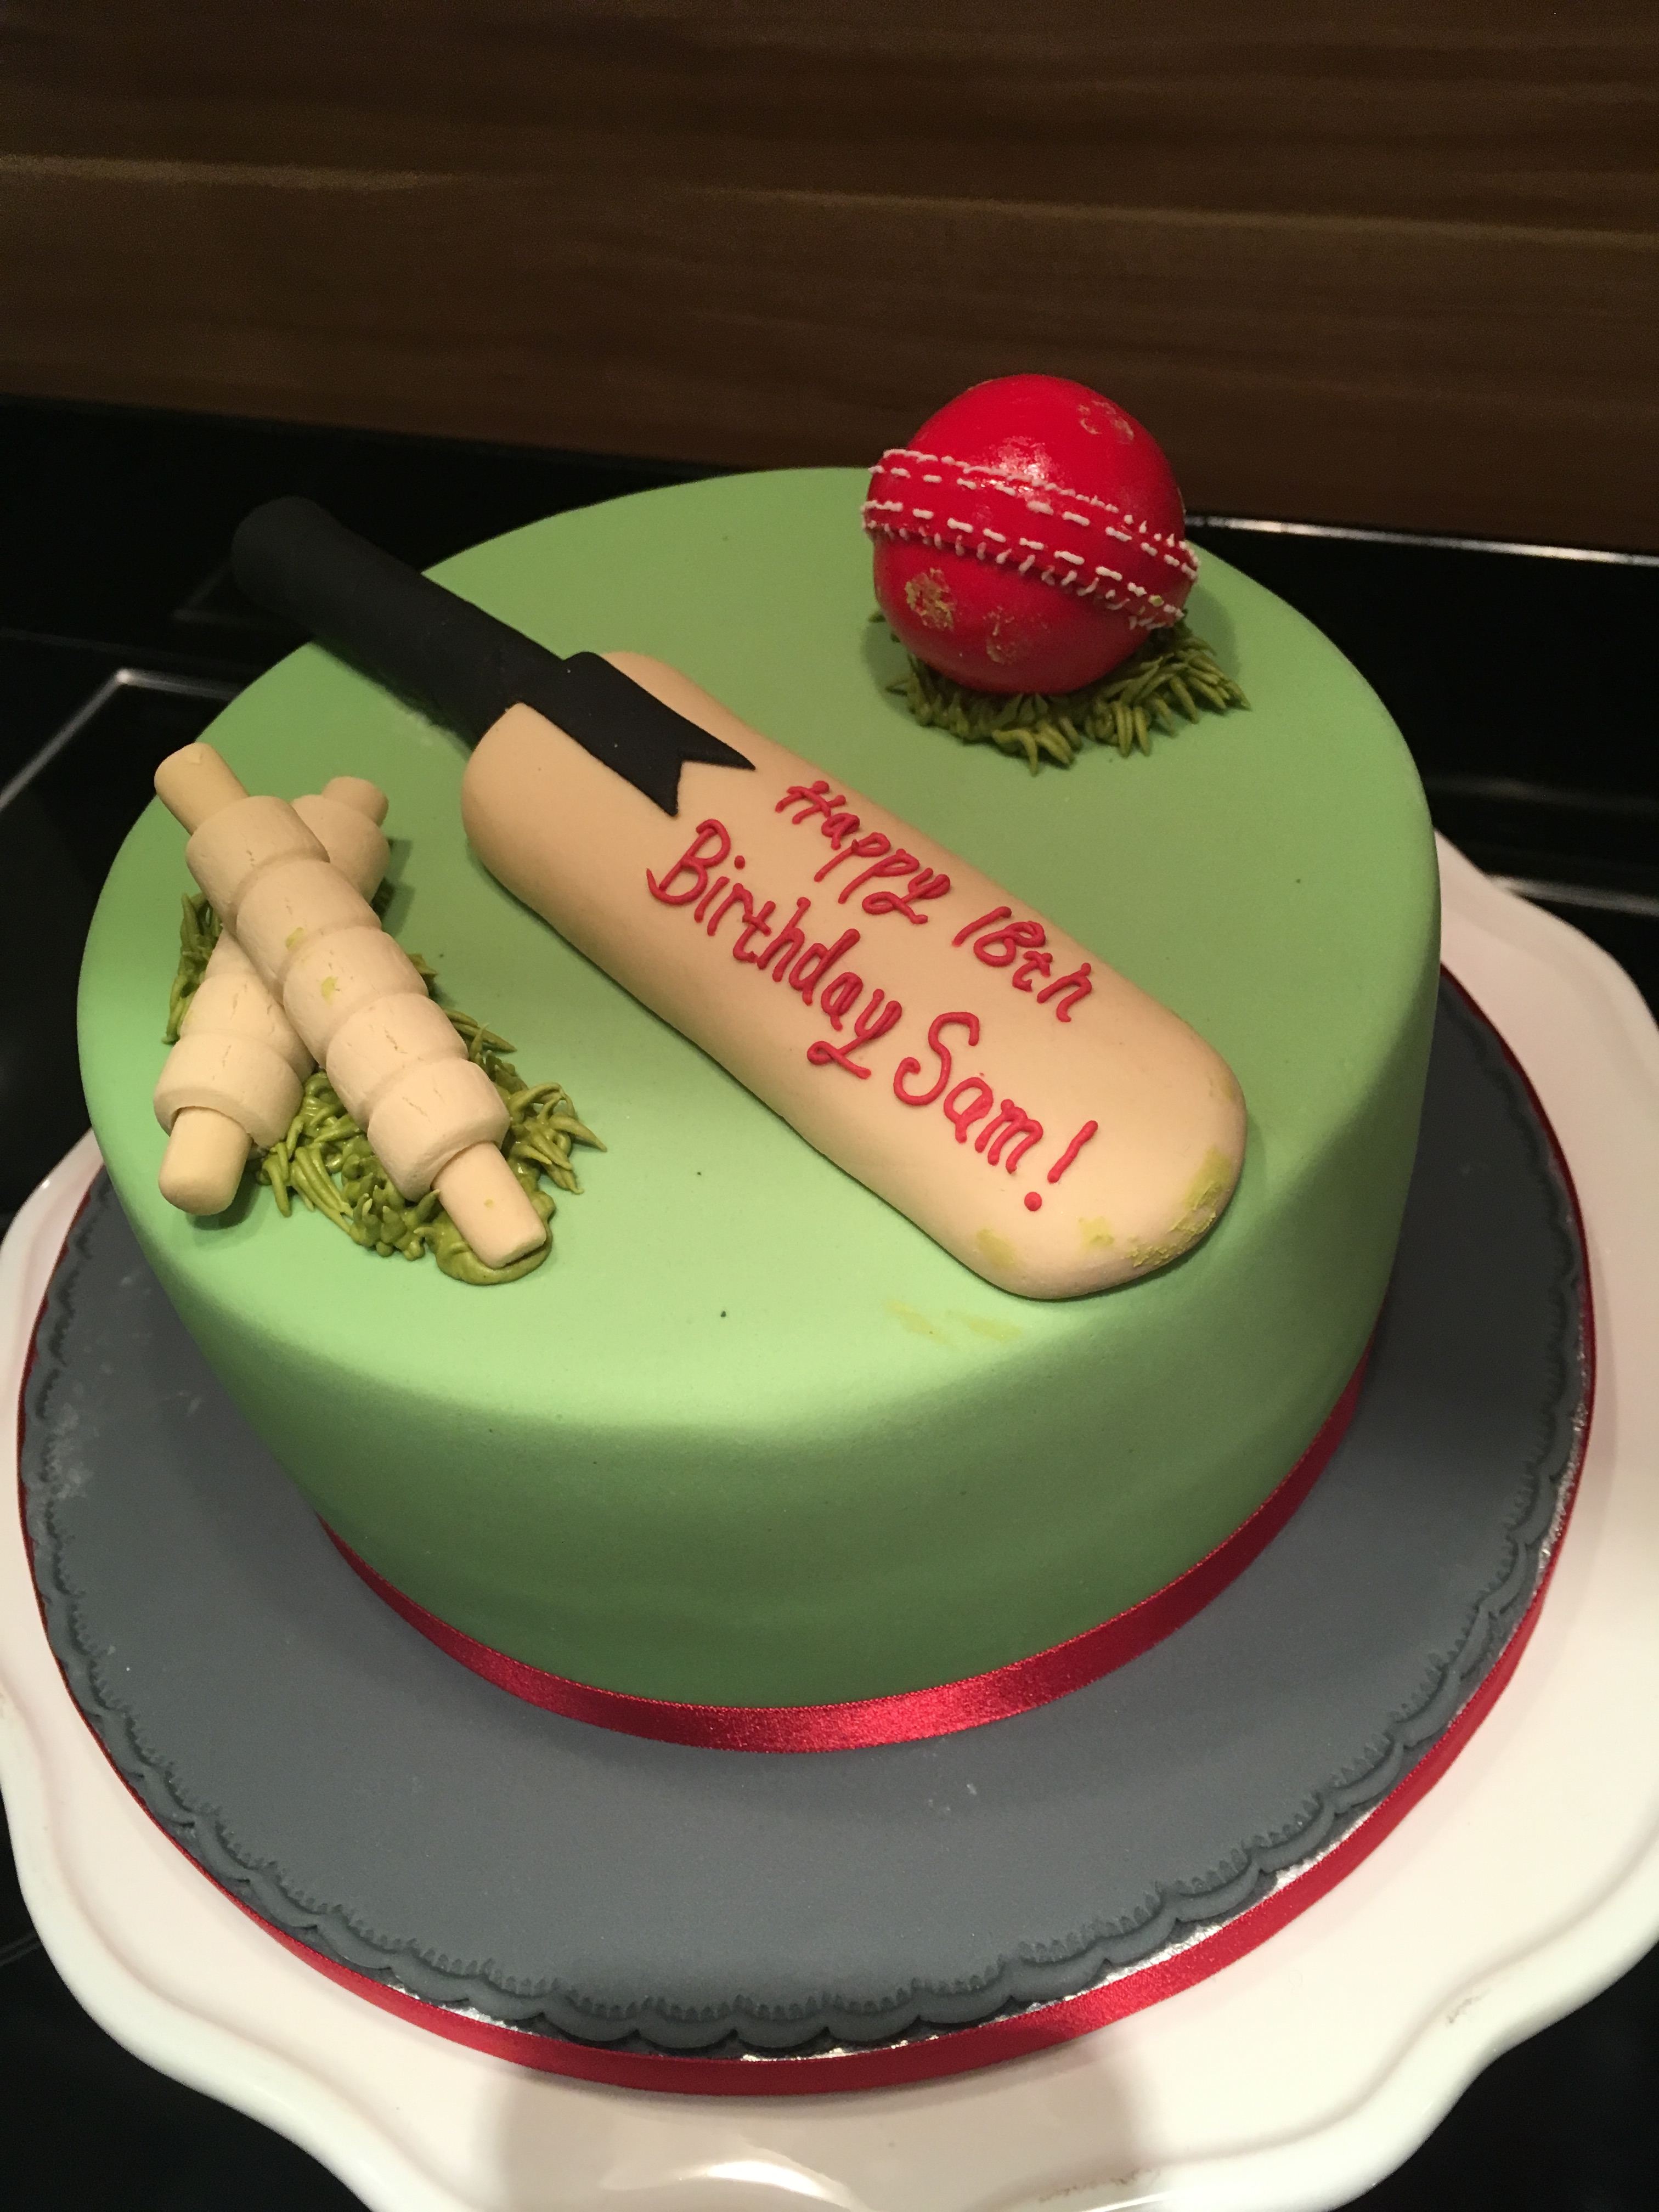 Cricket fan cake